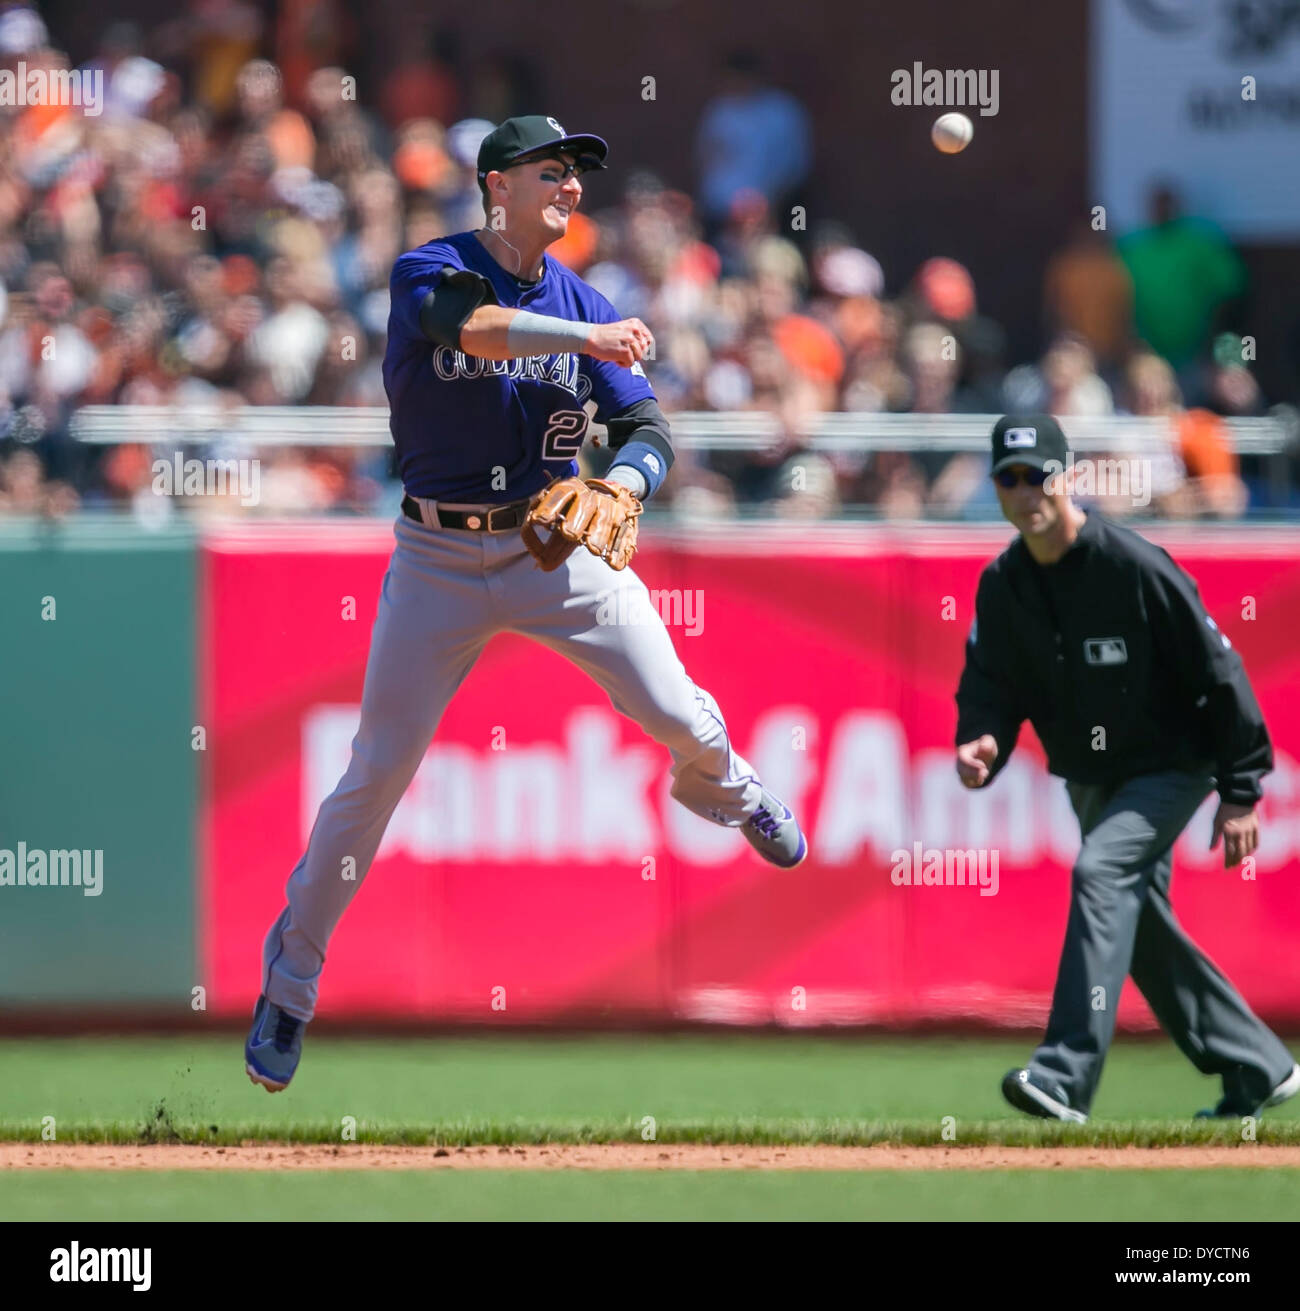 20 avril 2013 : Colorado Rockies shortstop Troy Tulowitzki (2) en action au cours de la MLB baseball match entre les Rockies du Colorado et les Giants de San Francisco à AT&T Park à San Francisco CA. Les géants vaincus les Rocheuses 5-4. Damon Tarver/Cal Sport Media Banque D'Images